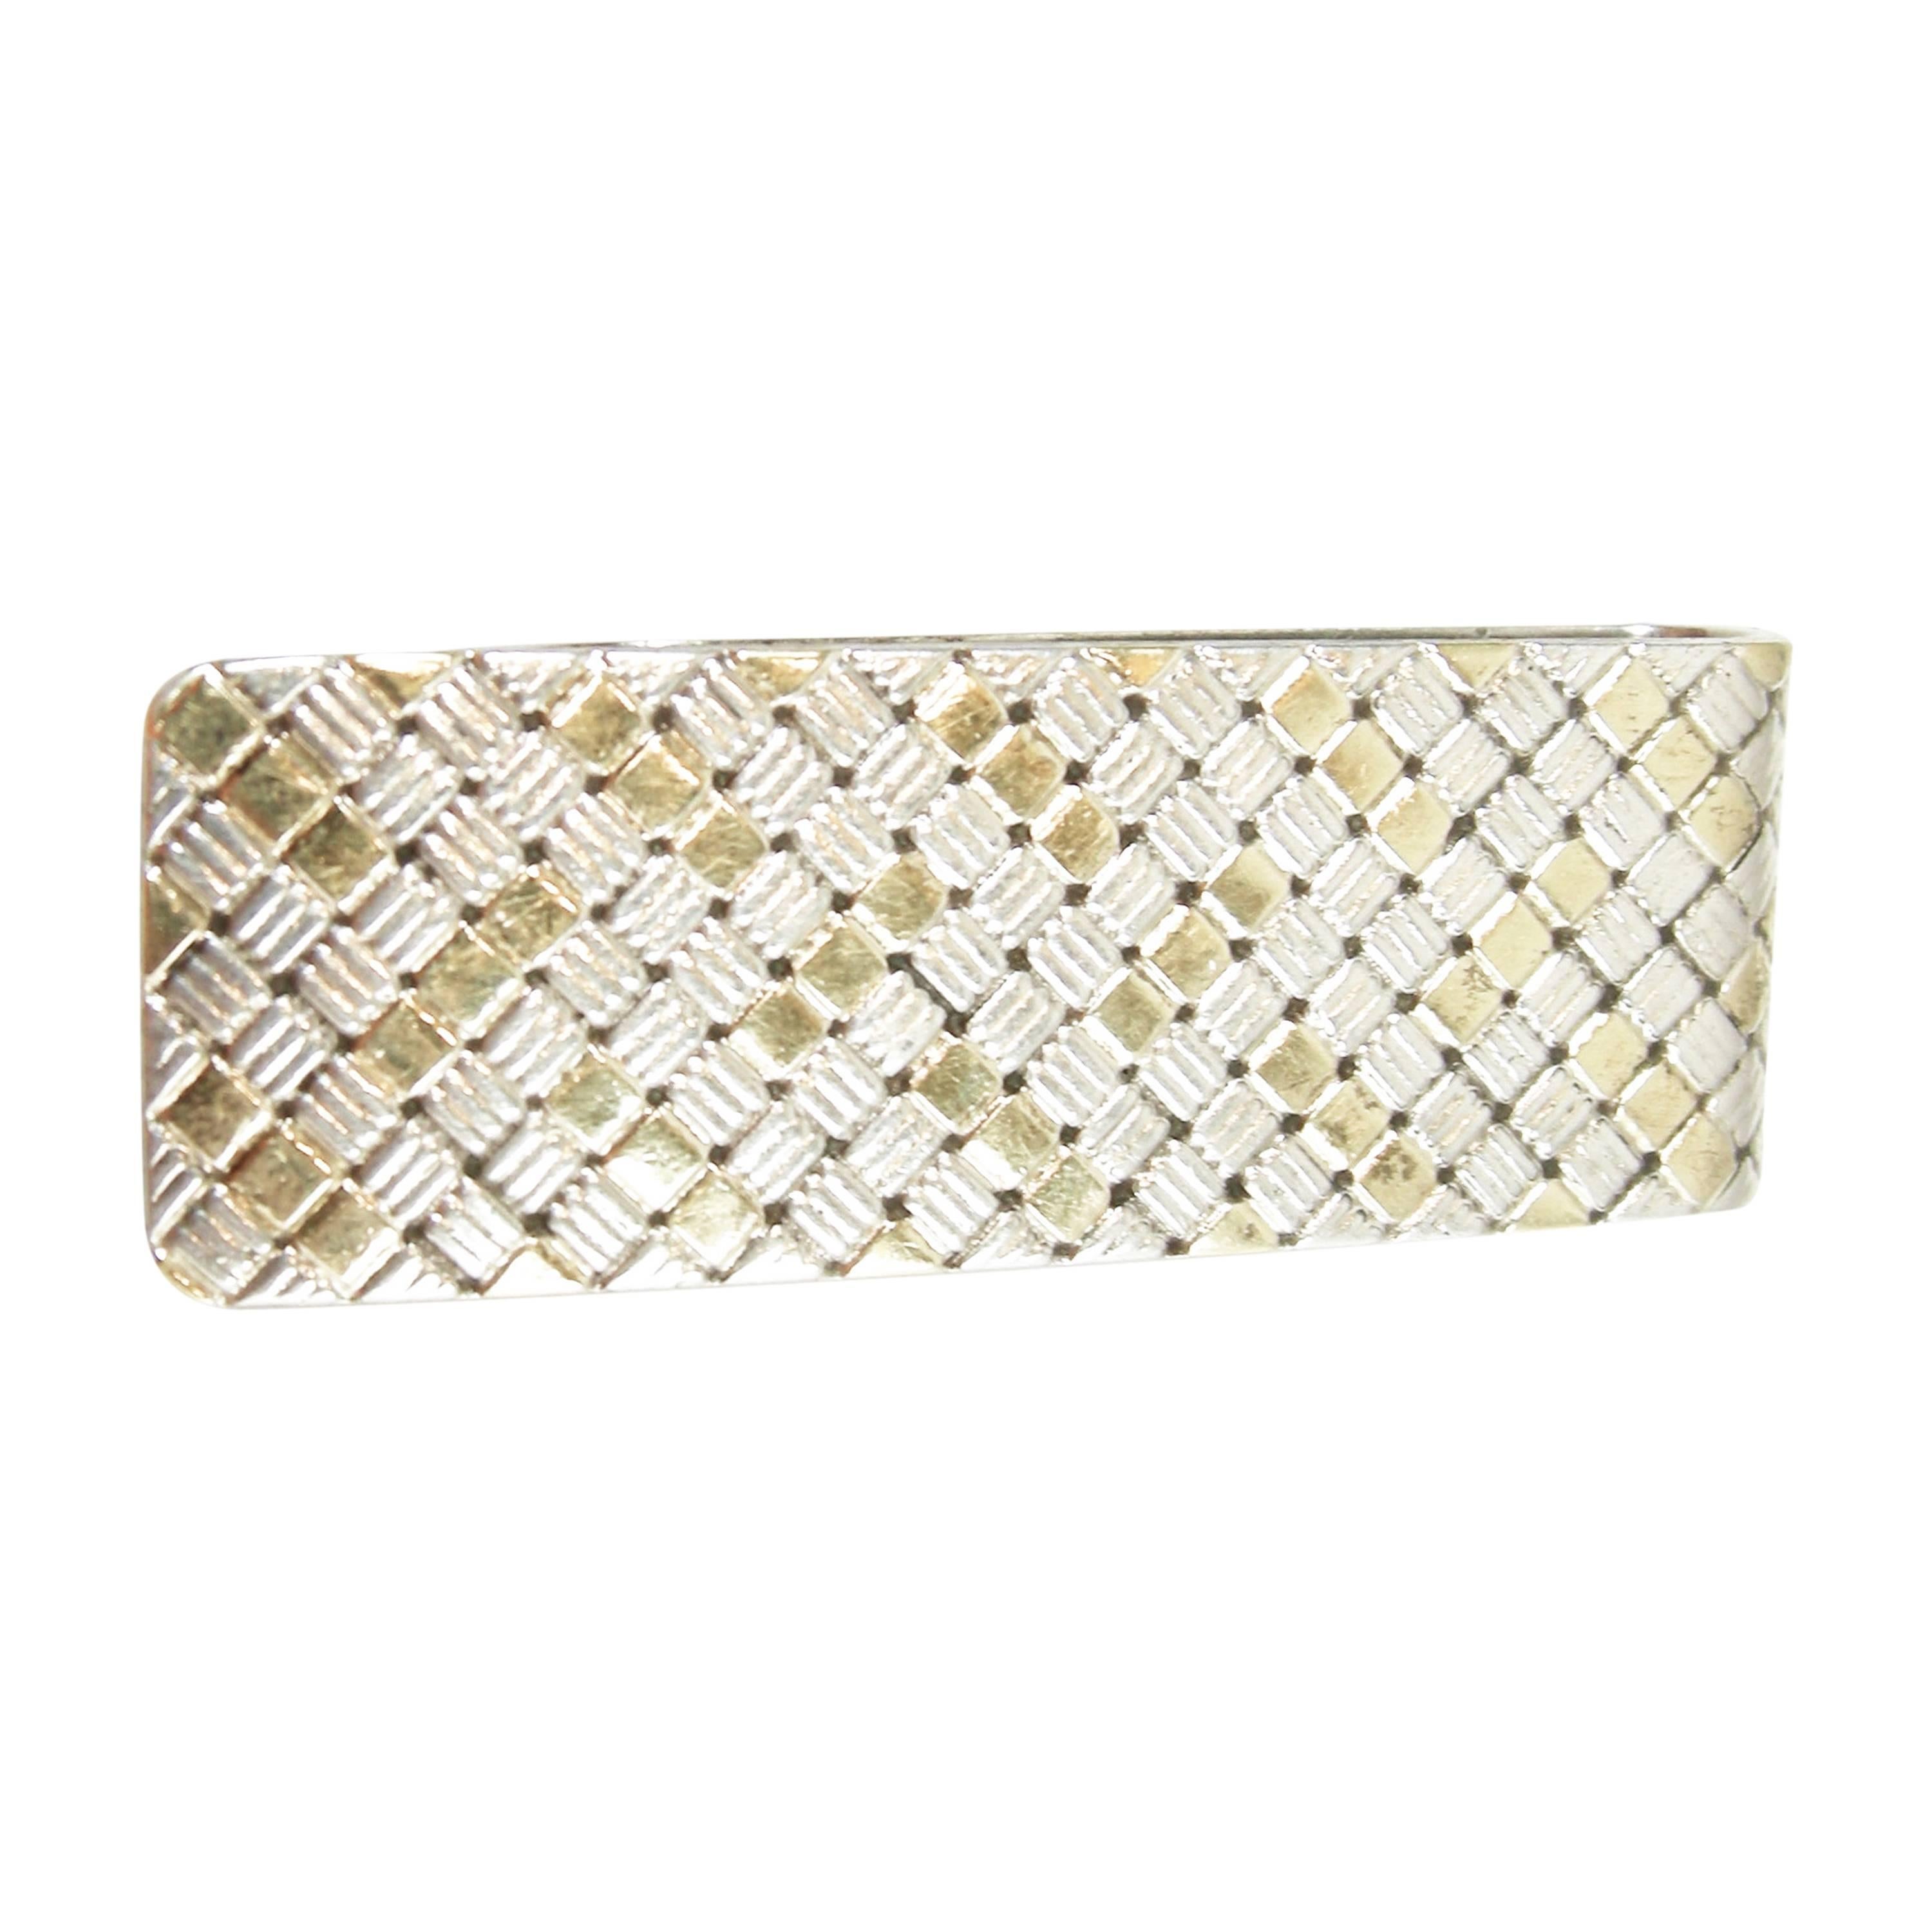 Cartier 18k Gold & Sterling Basket Weave Design Money Clip